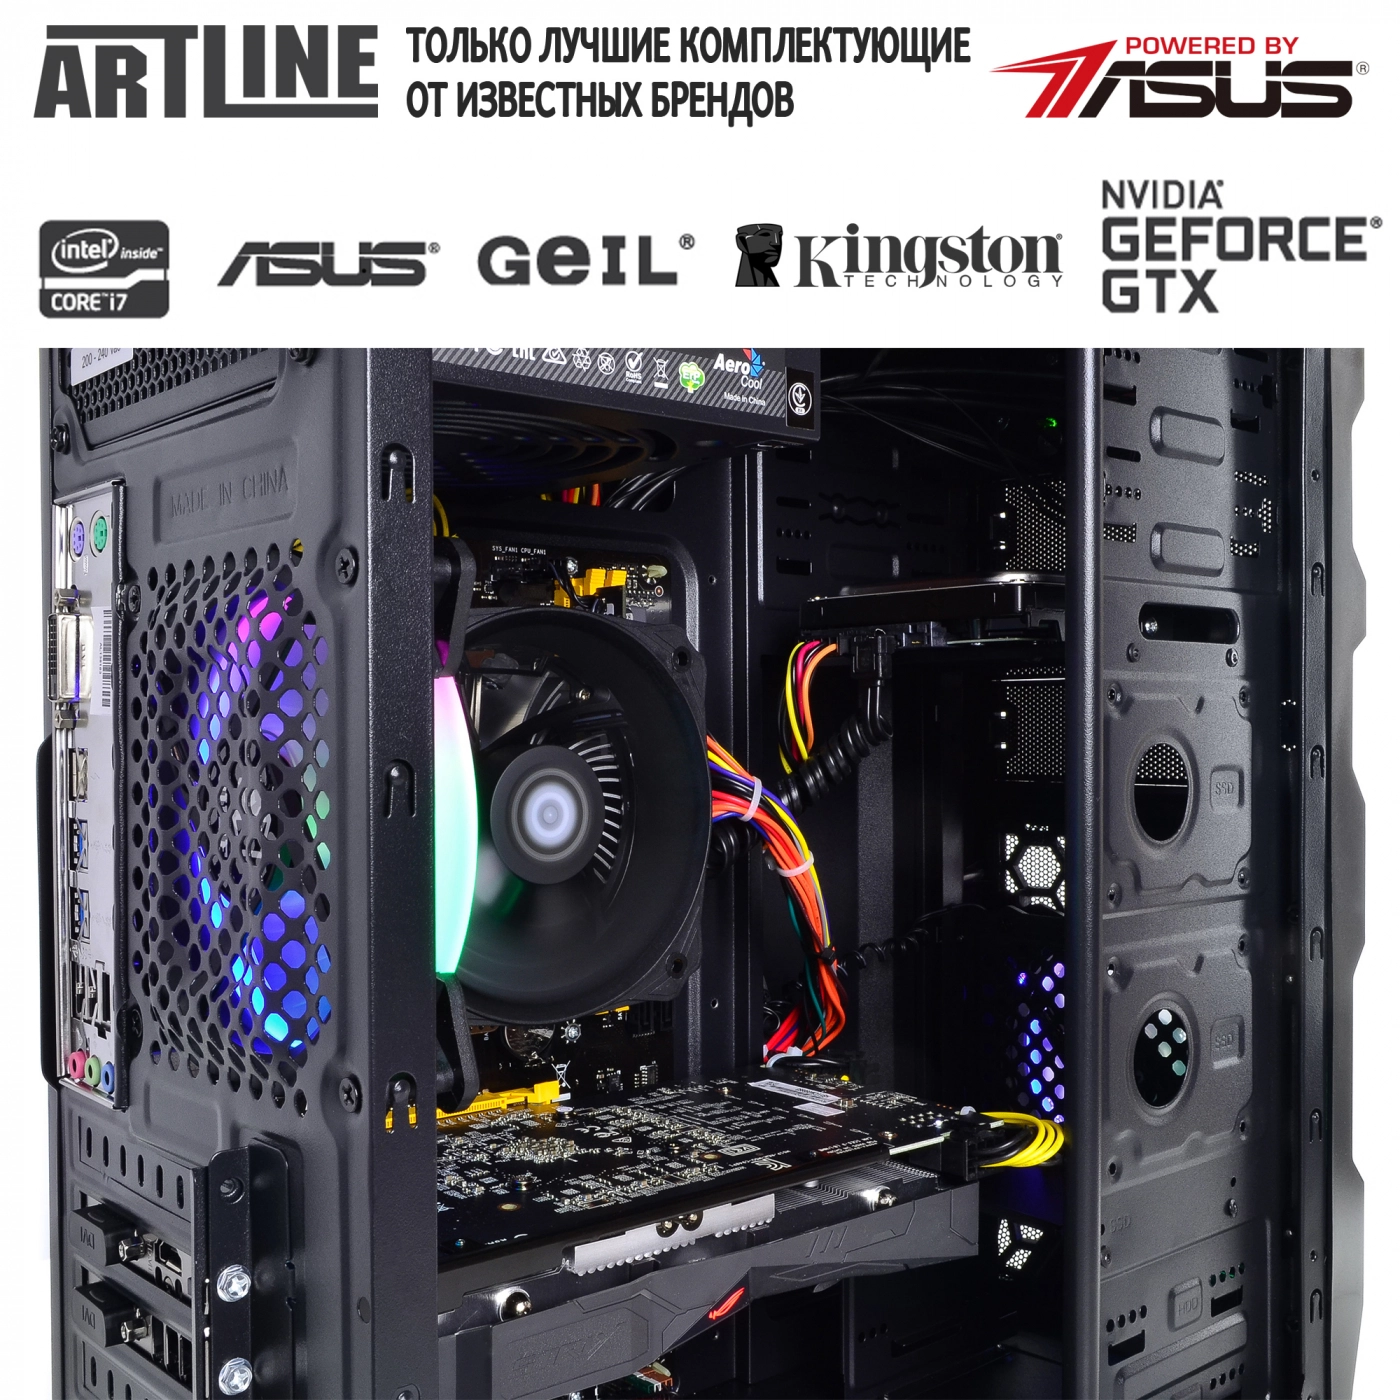 Купить Компьютер ARTLINE Gaming X51v05 - фото 6